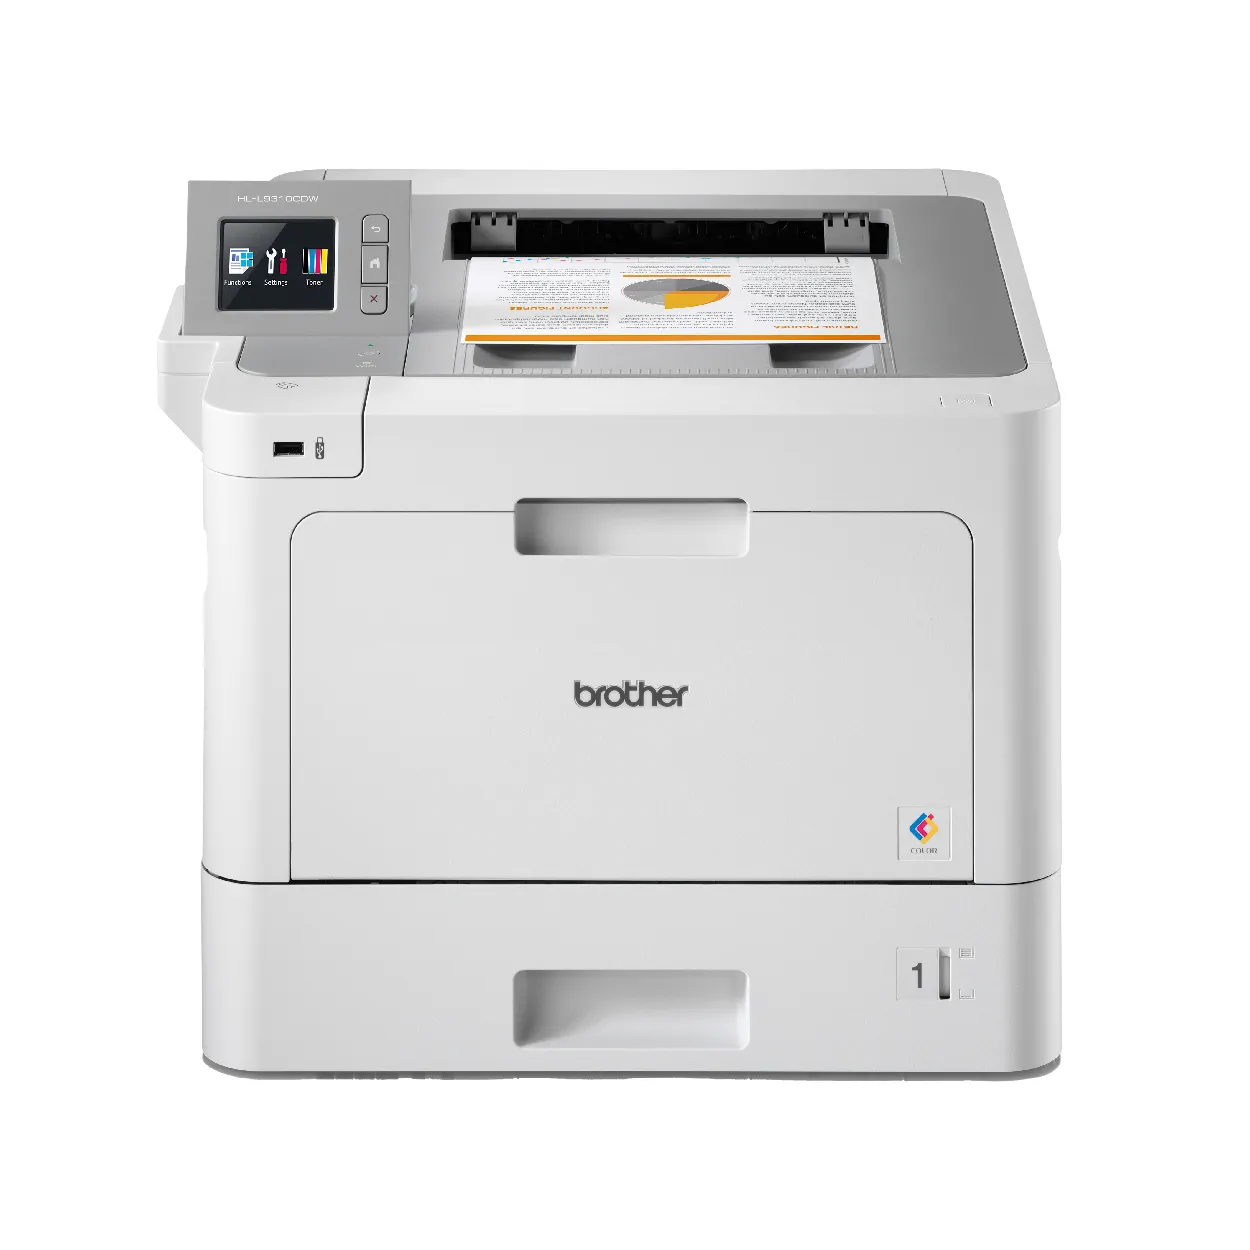 Printers & Multifunctions